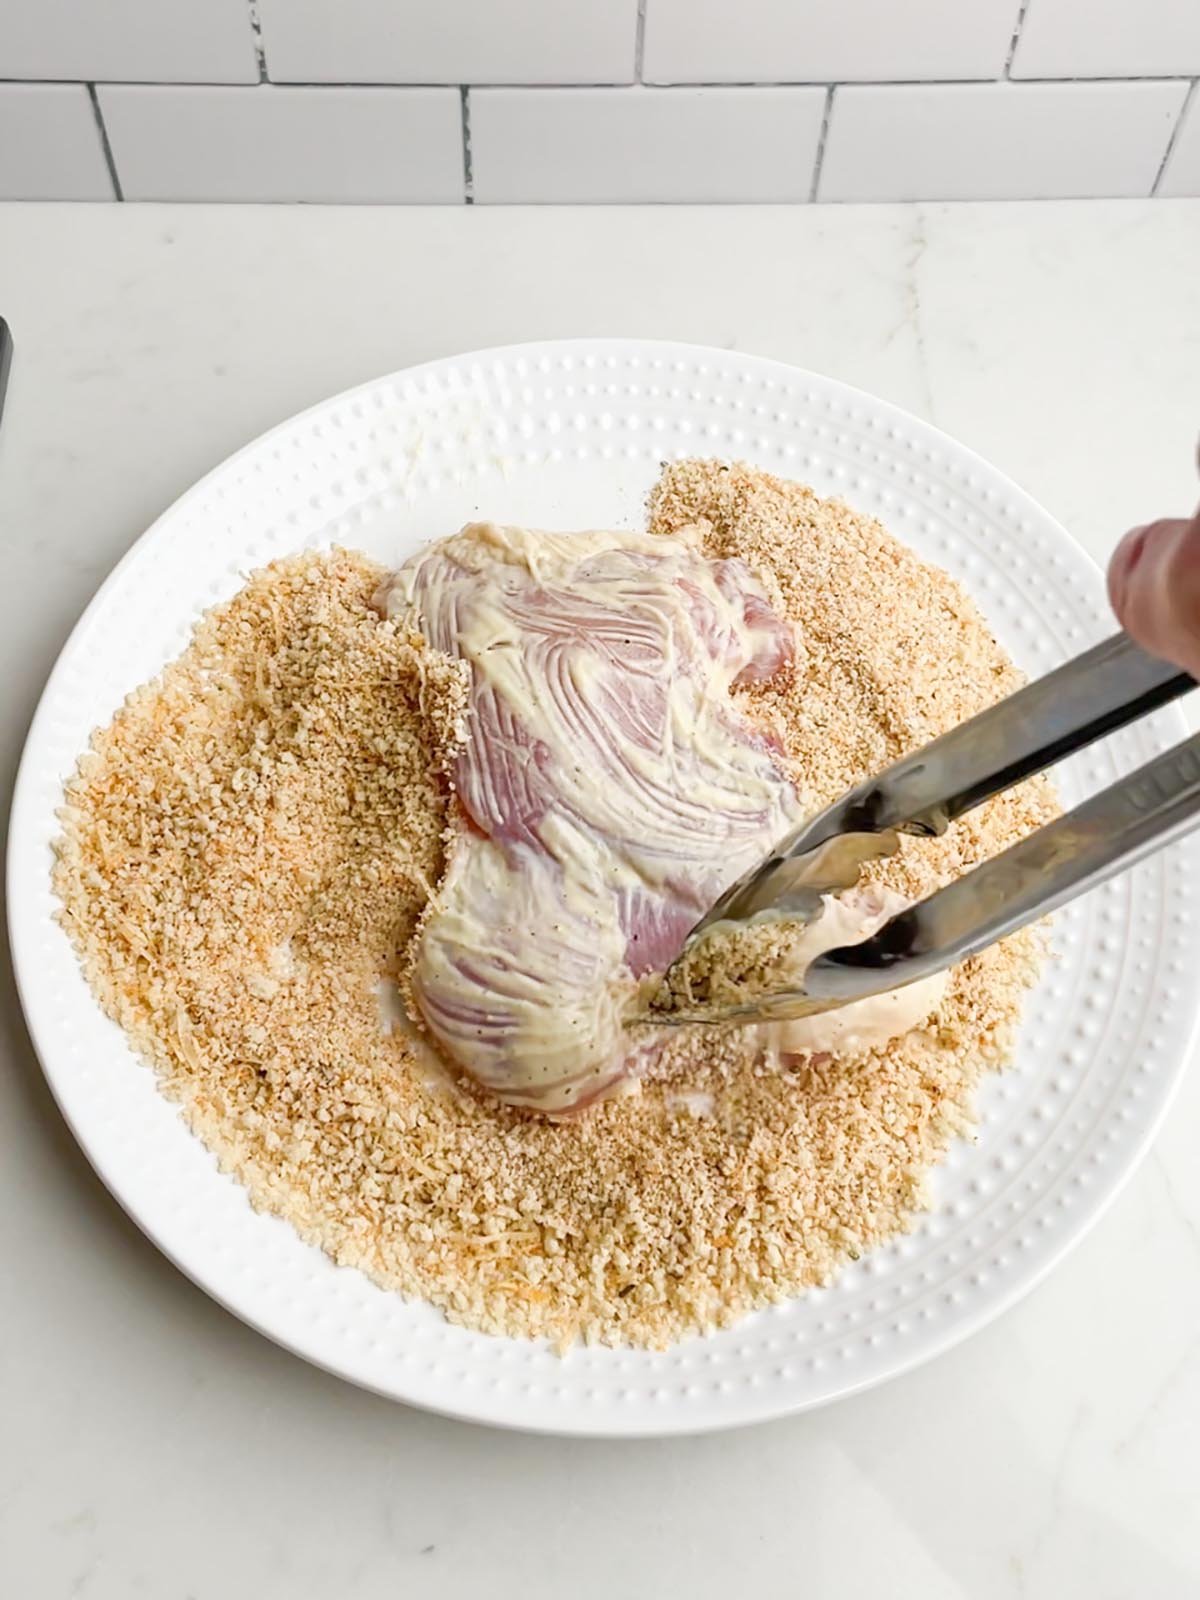 tongs dredging chicken in panko breadcrumb mixture